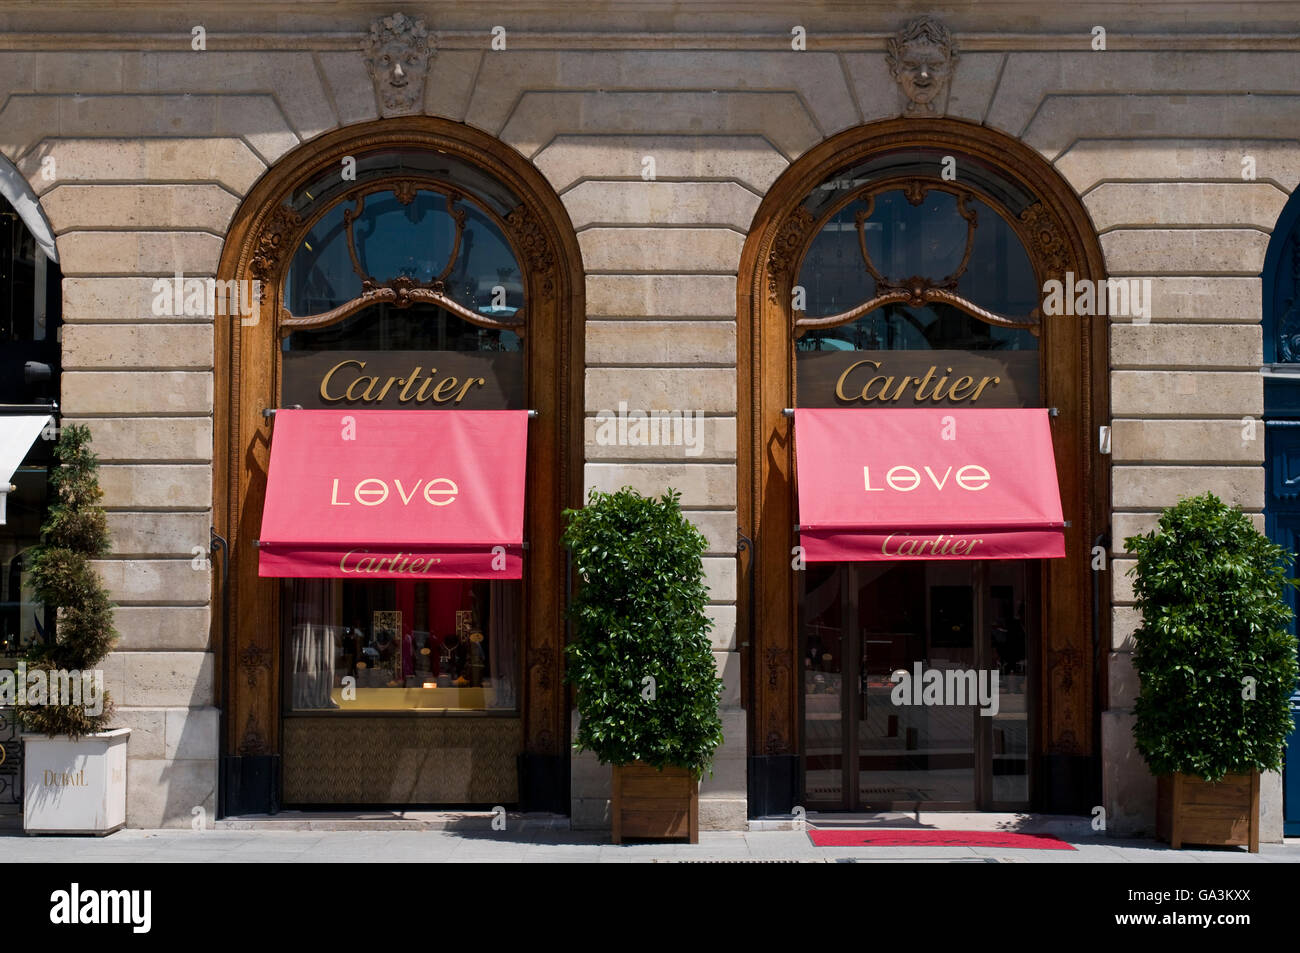 Cartier Place Vendome Banque d'image et photos - Alamy